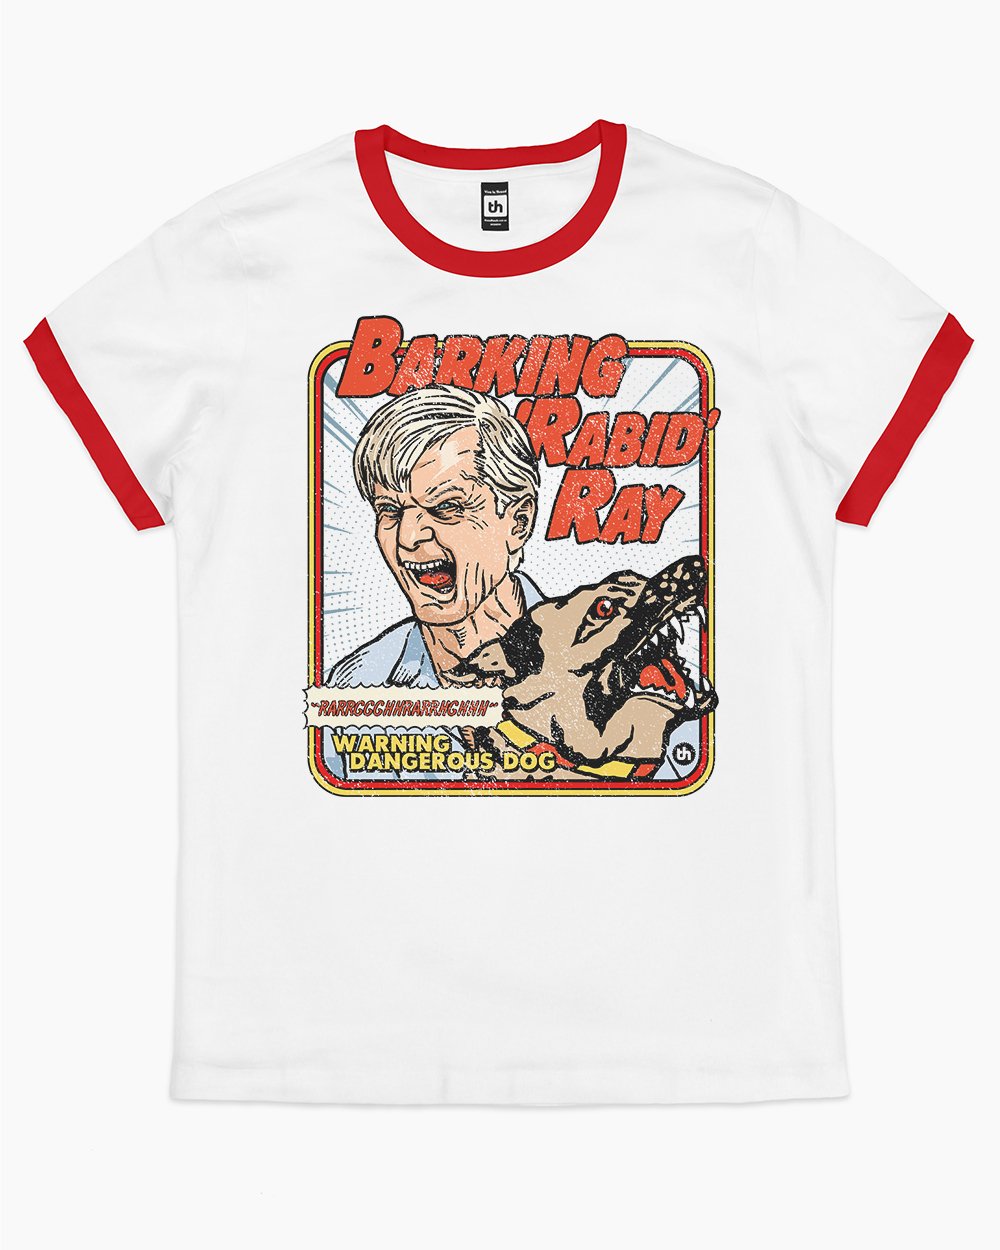 Barking Rabid Ray T-Shirt Australia Online #colour_red ringer